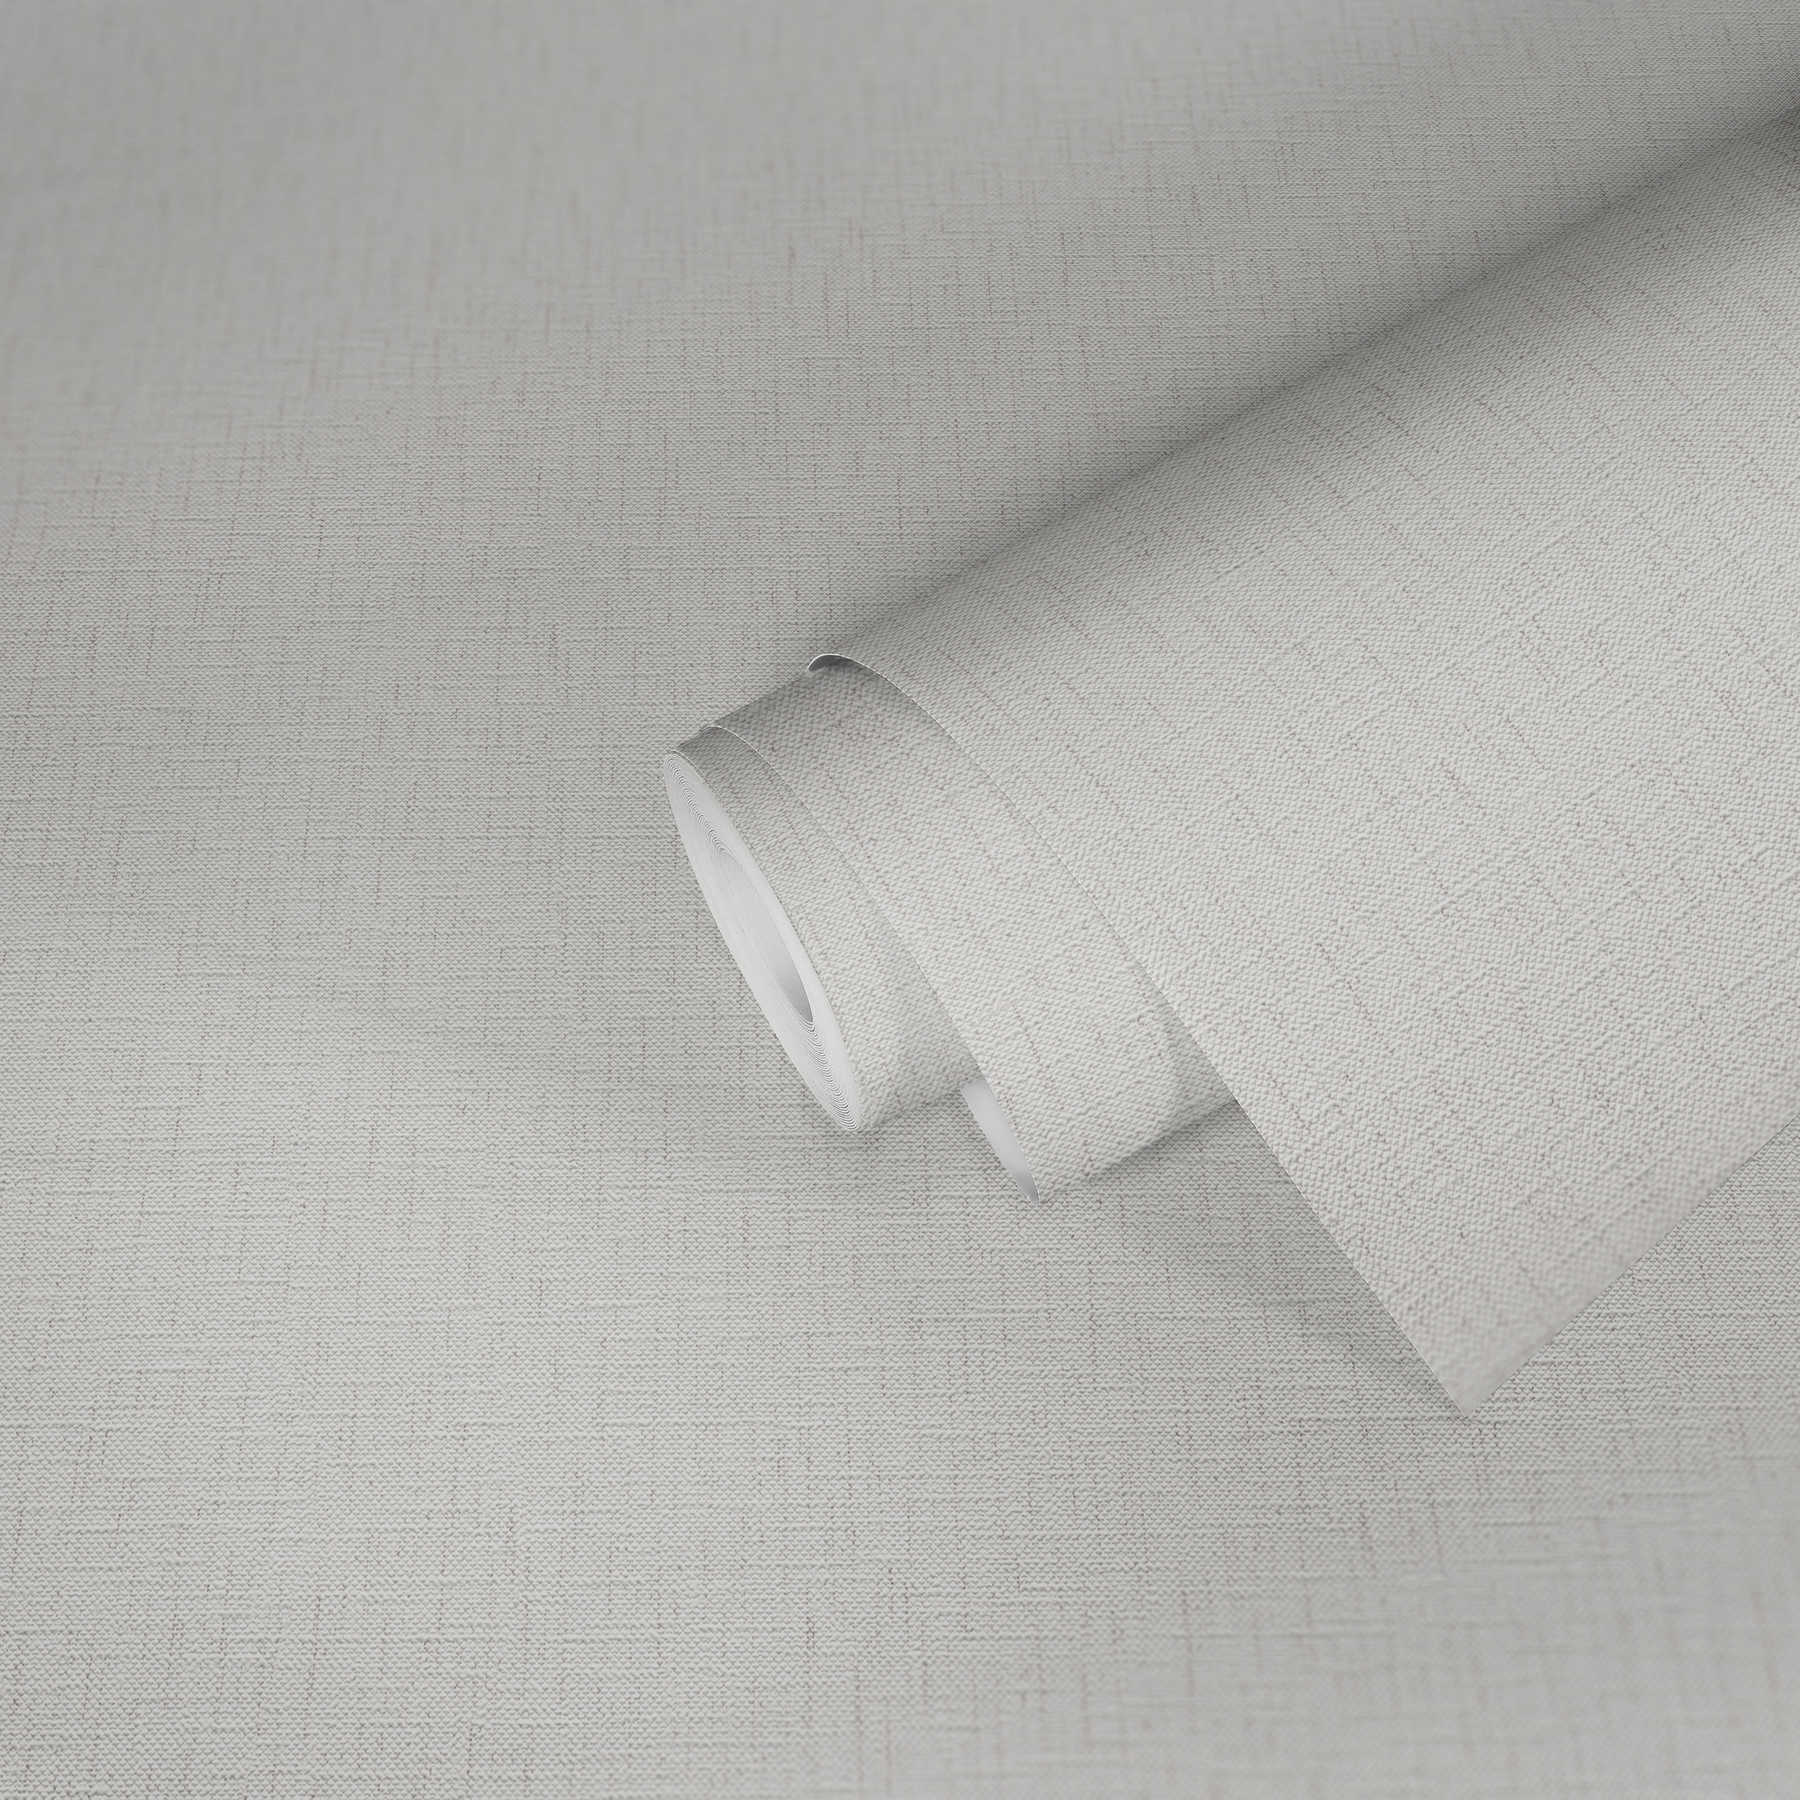             Papier peint aspect textile avec teinture chinée - gris, blanc
        